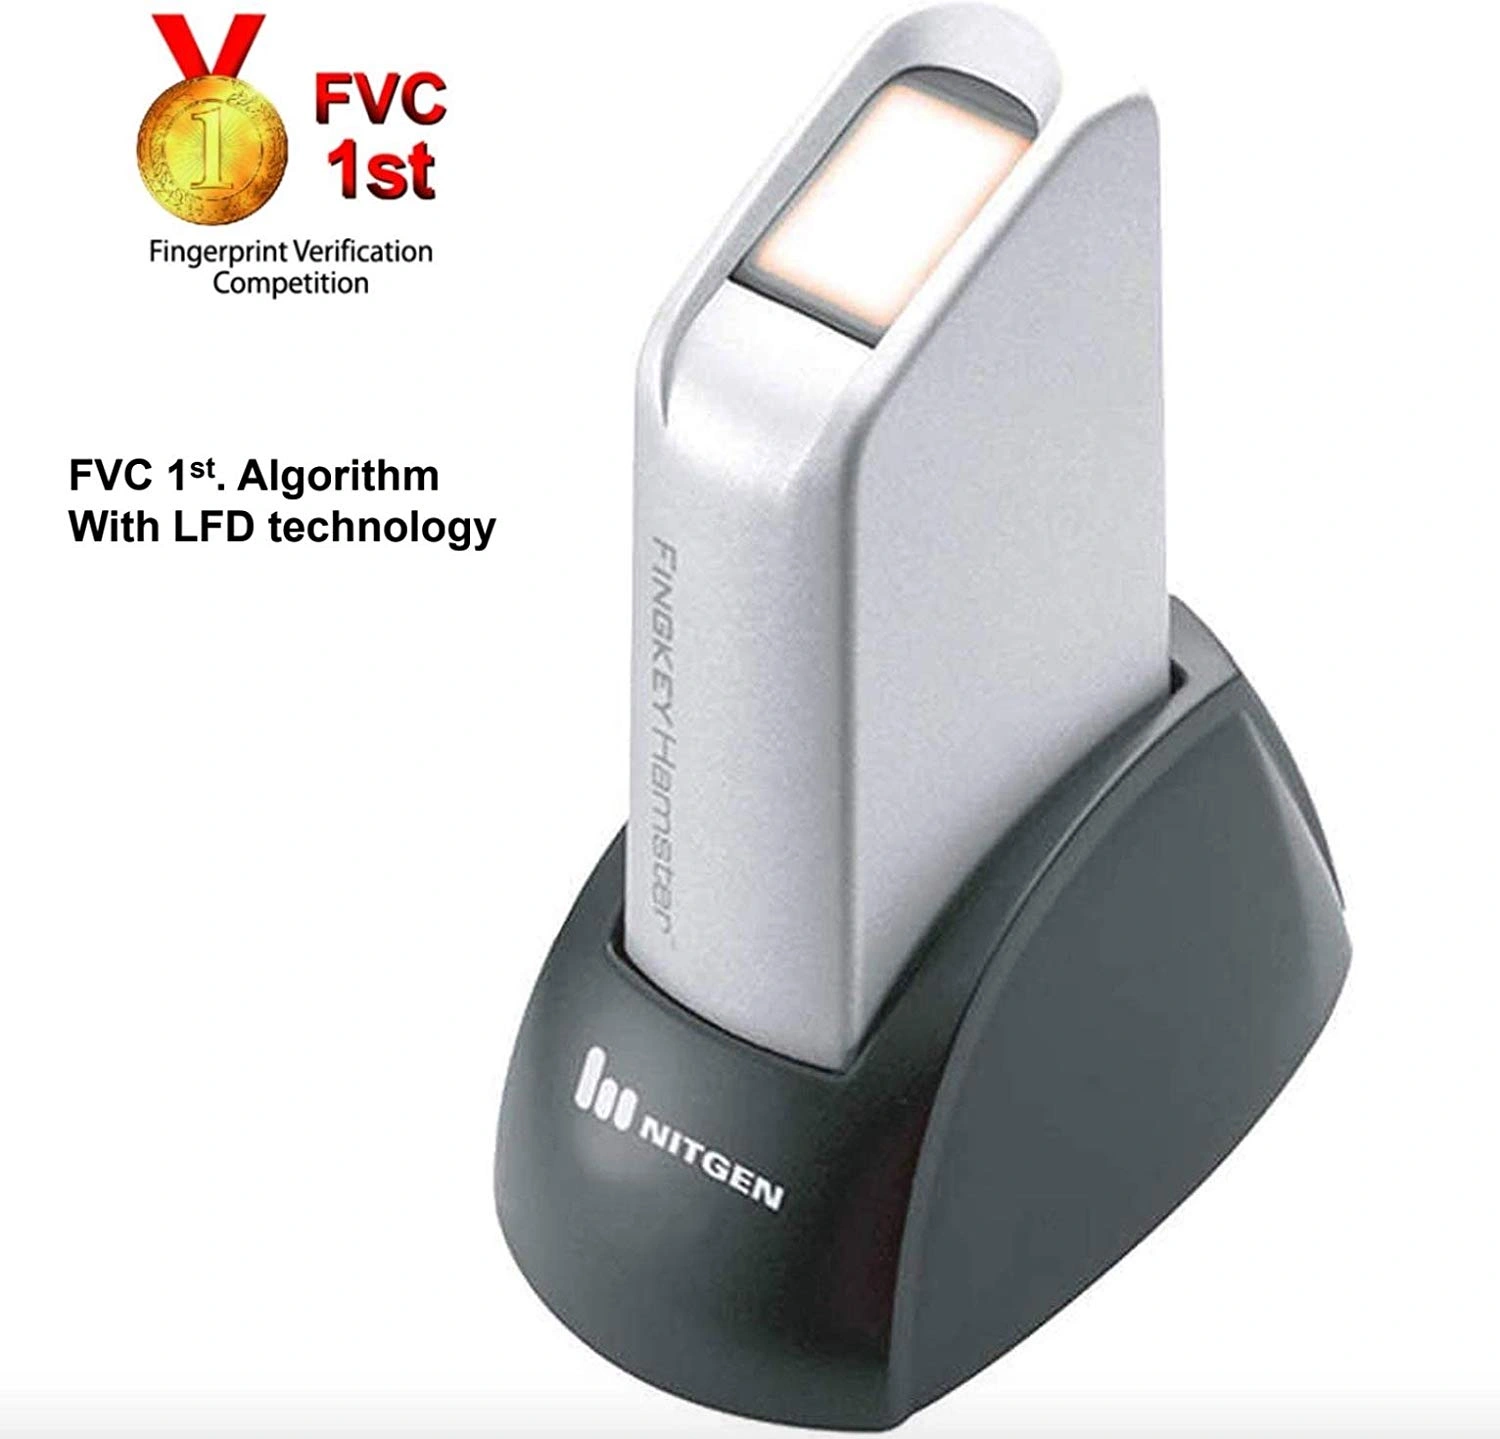 Hamster Dx HFDU06 Nitgen USD Fingerprint scanner-2